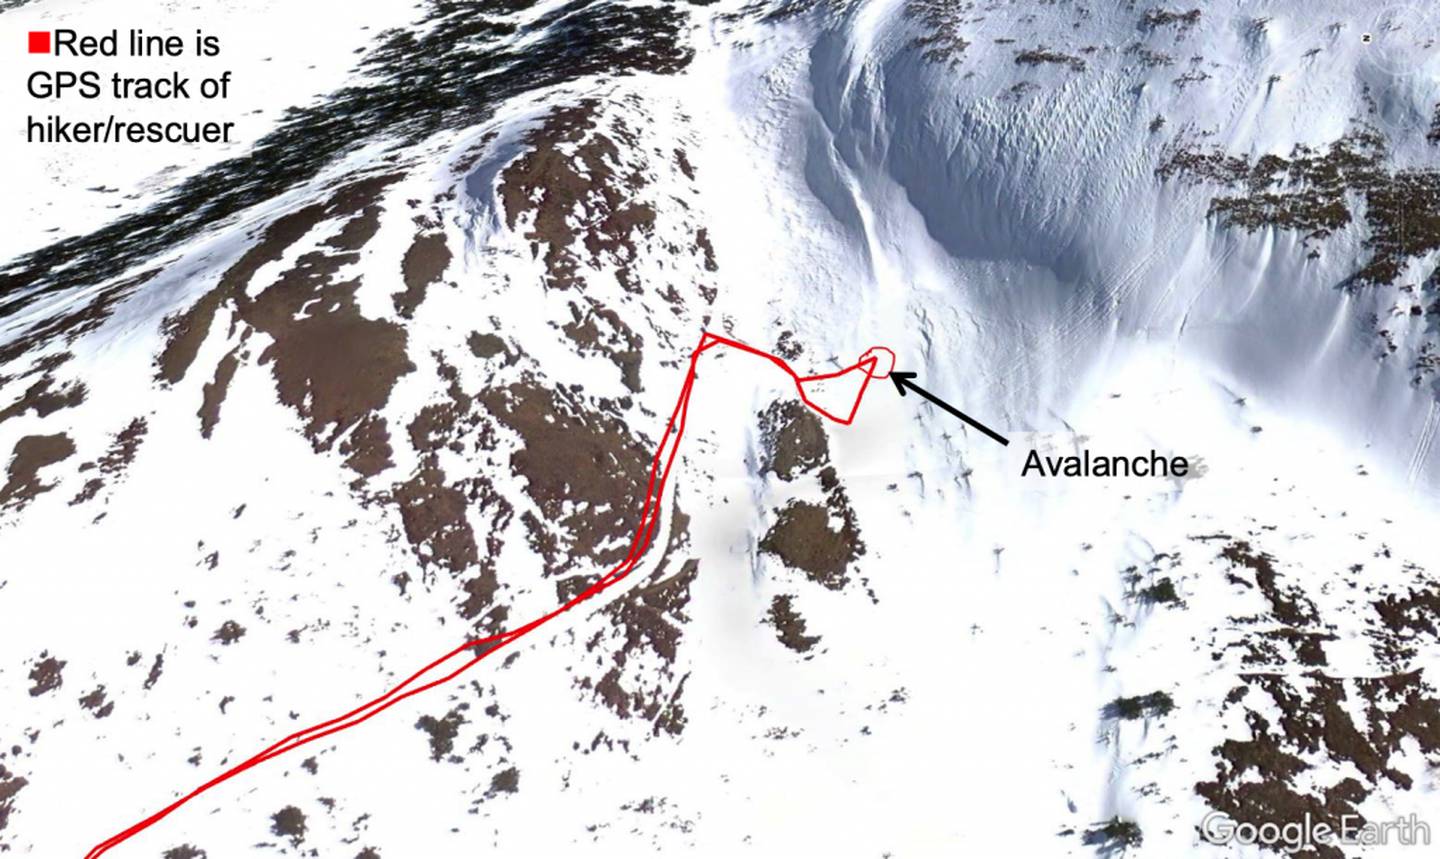 Flattop avalanche